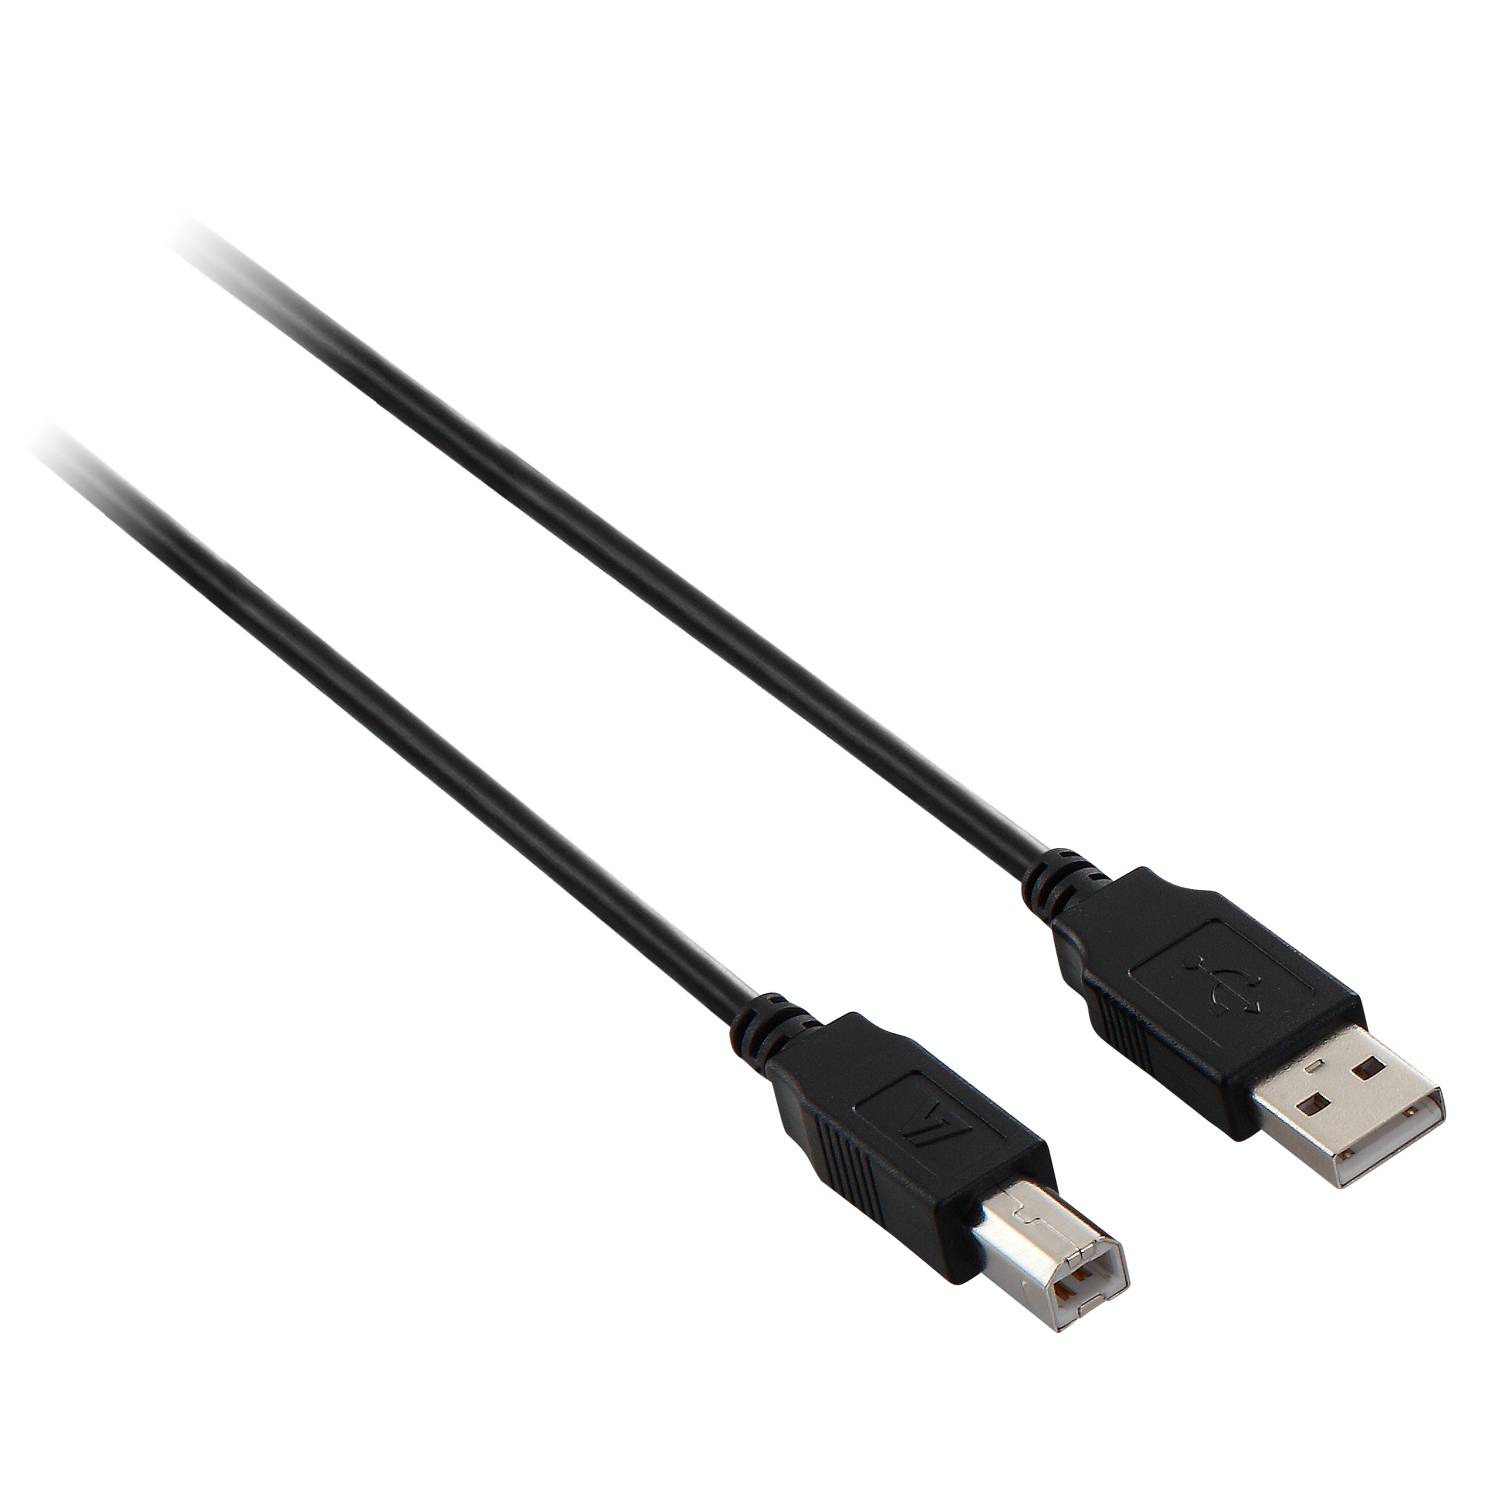 Rca Informatique - image du produit : USB2.0 A TO B CABLE 1.8M BLACK DATA CABLE 480MBPS PERIPHERALS